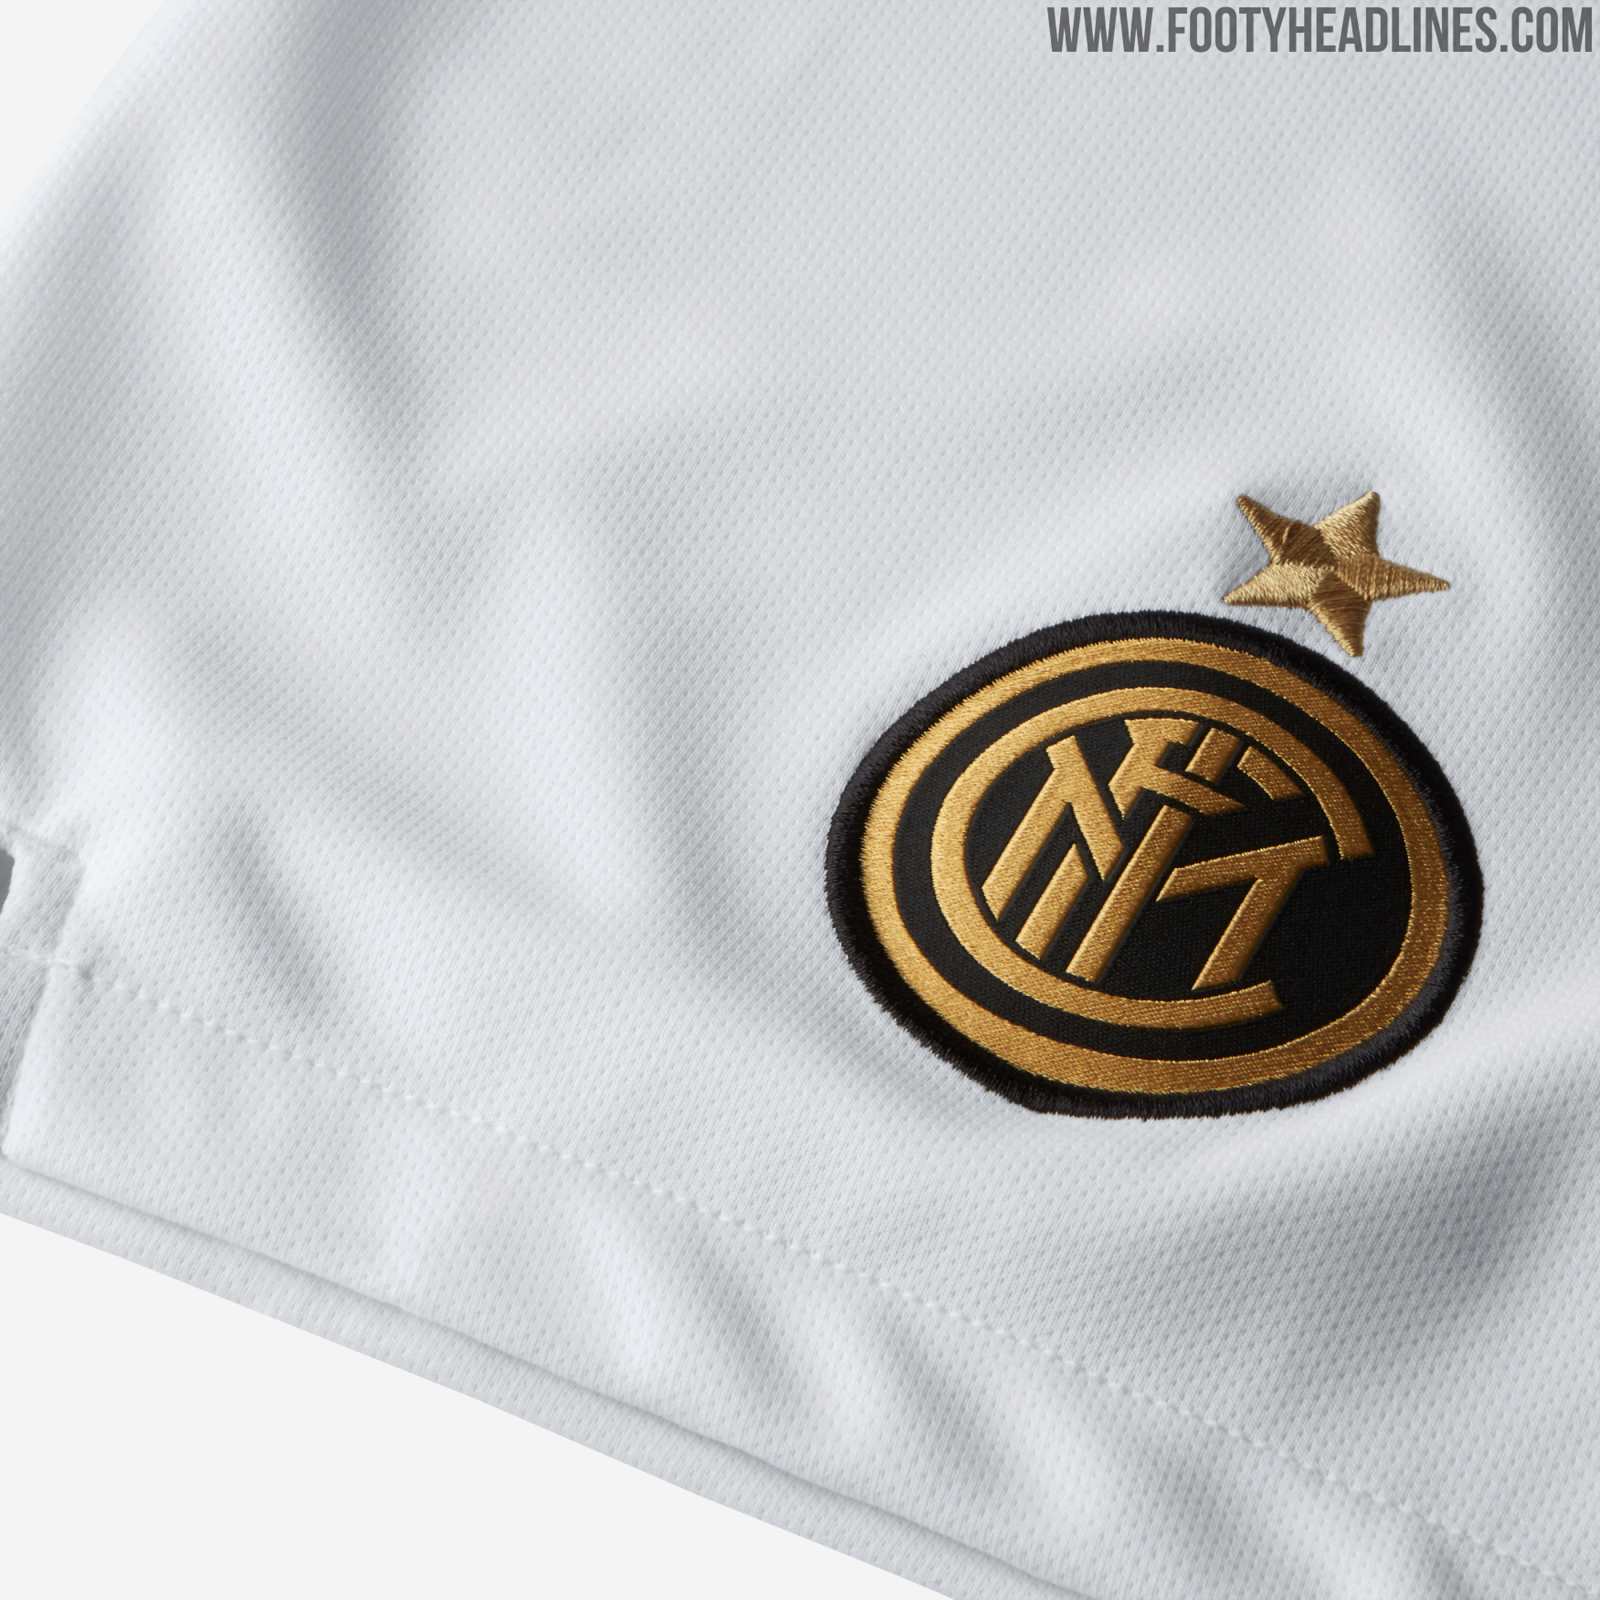 Nike Inter Milan 19-20 Away Kit Revealed - Footy Headlines